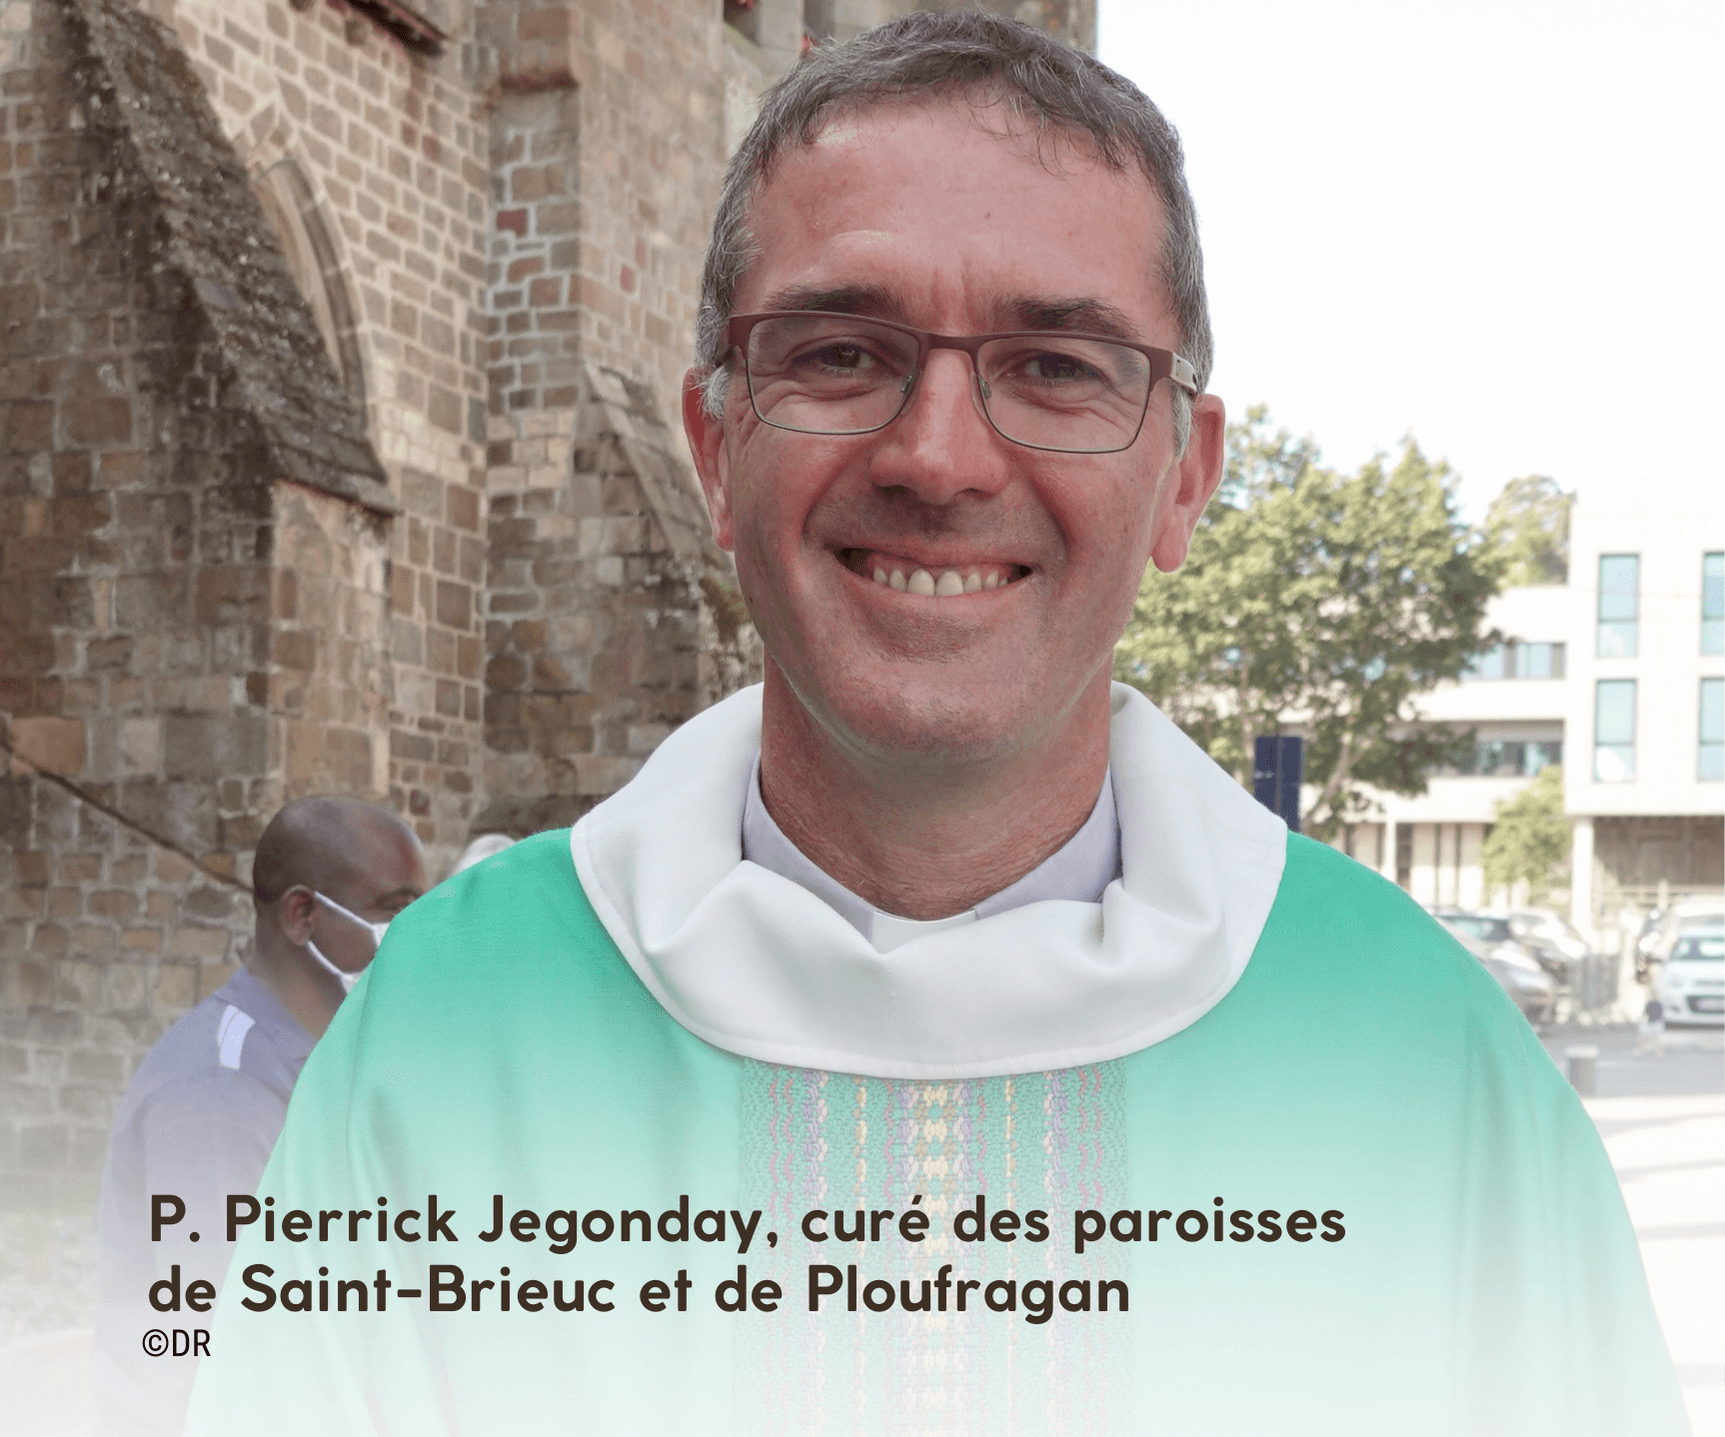 P. Pierrick Jegonday, curé des paroisses de Saint-Brieuc